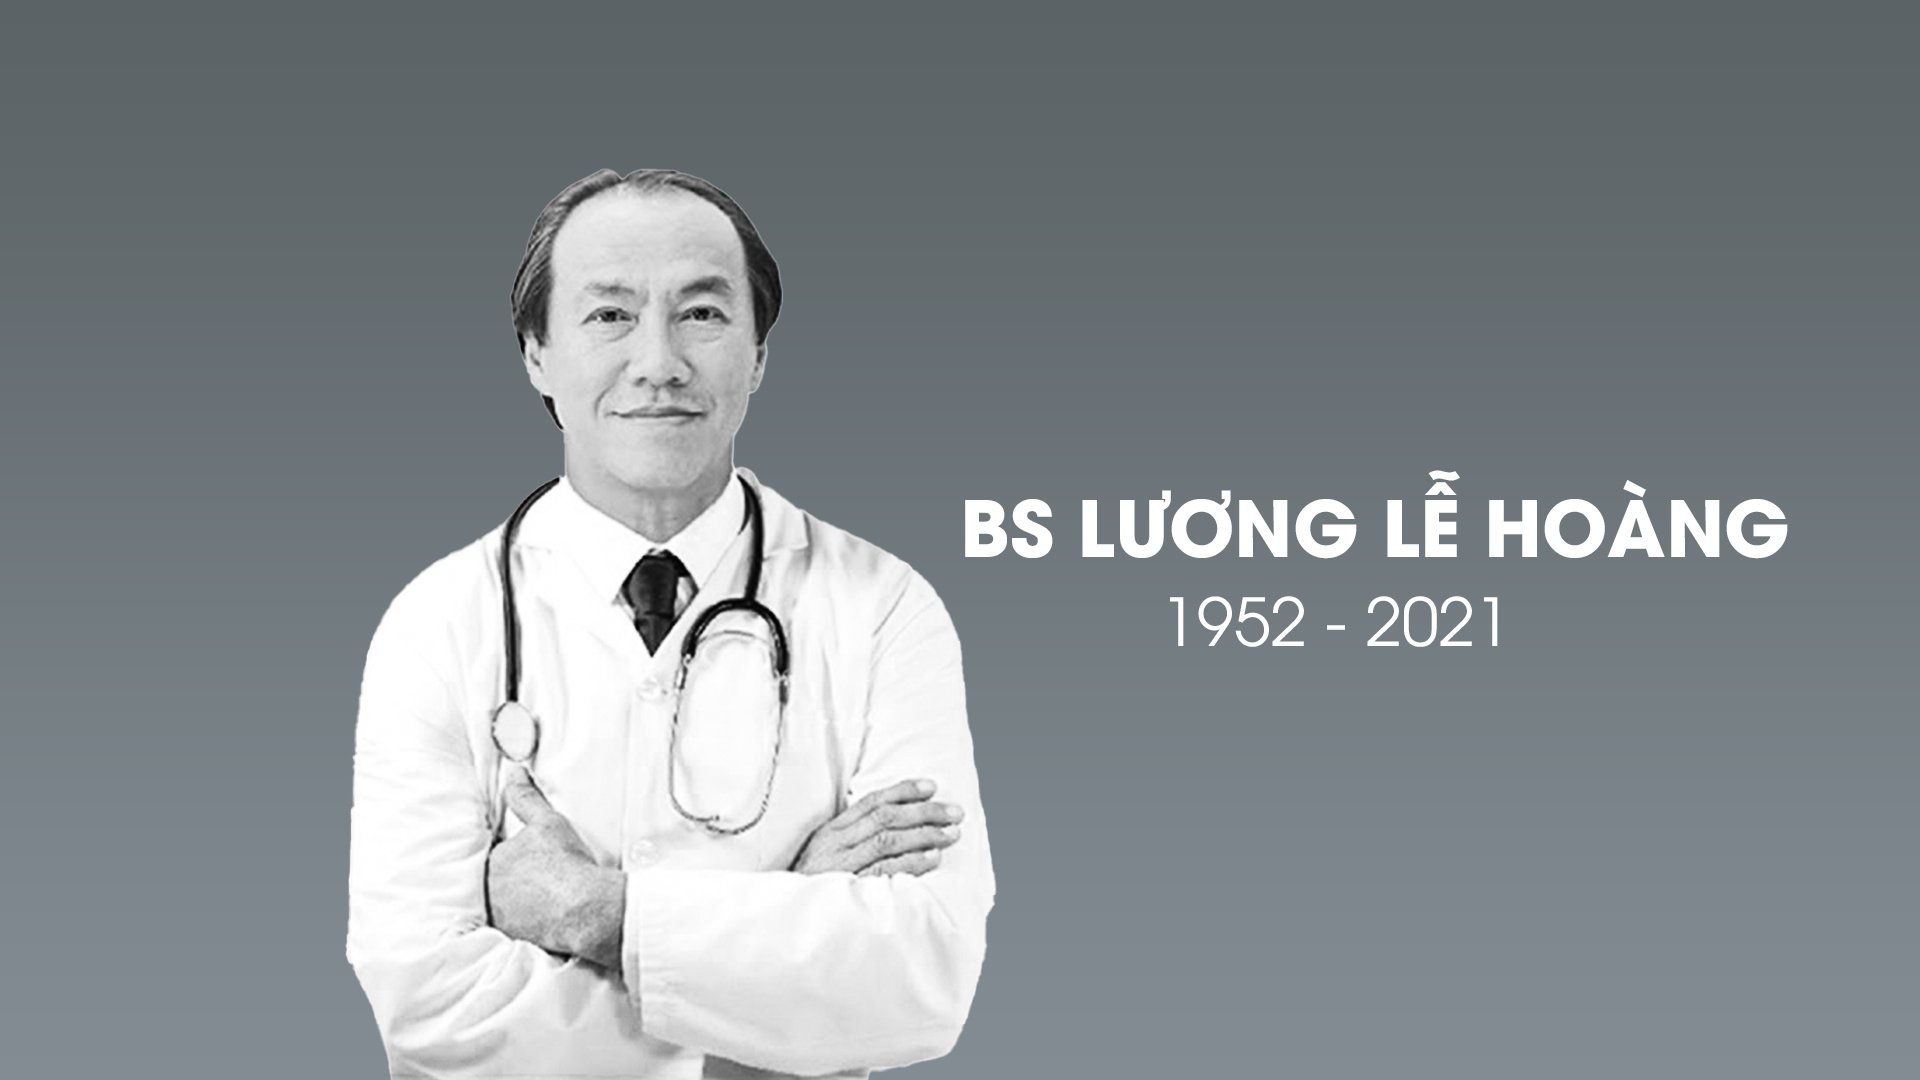 Ngày 14/11, bác sĩ Lương Lễ Hoàng qua đời sau thời gian điều trị COVID-19.